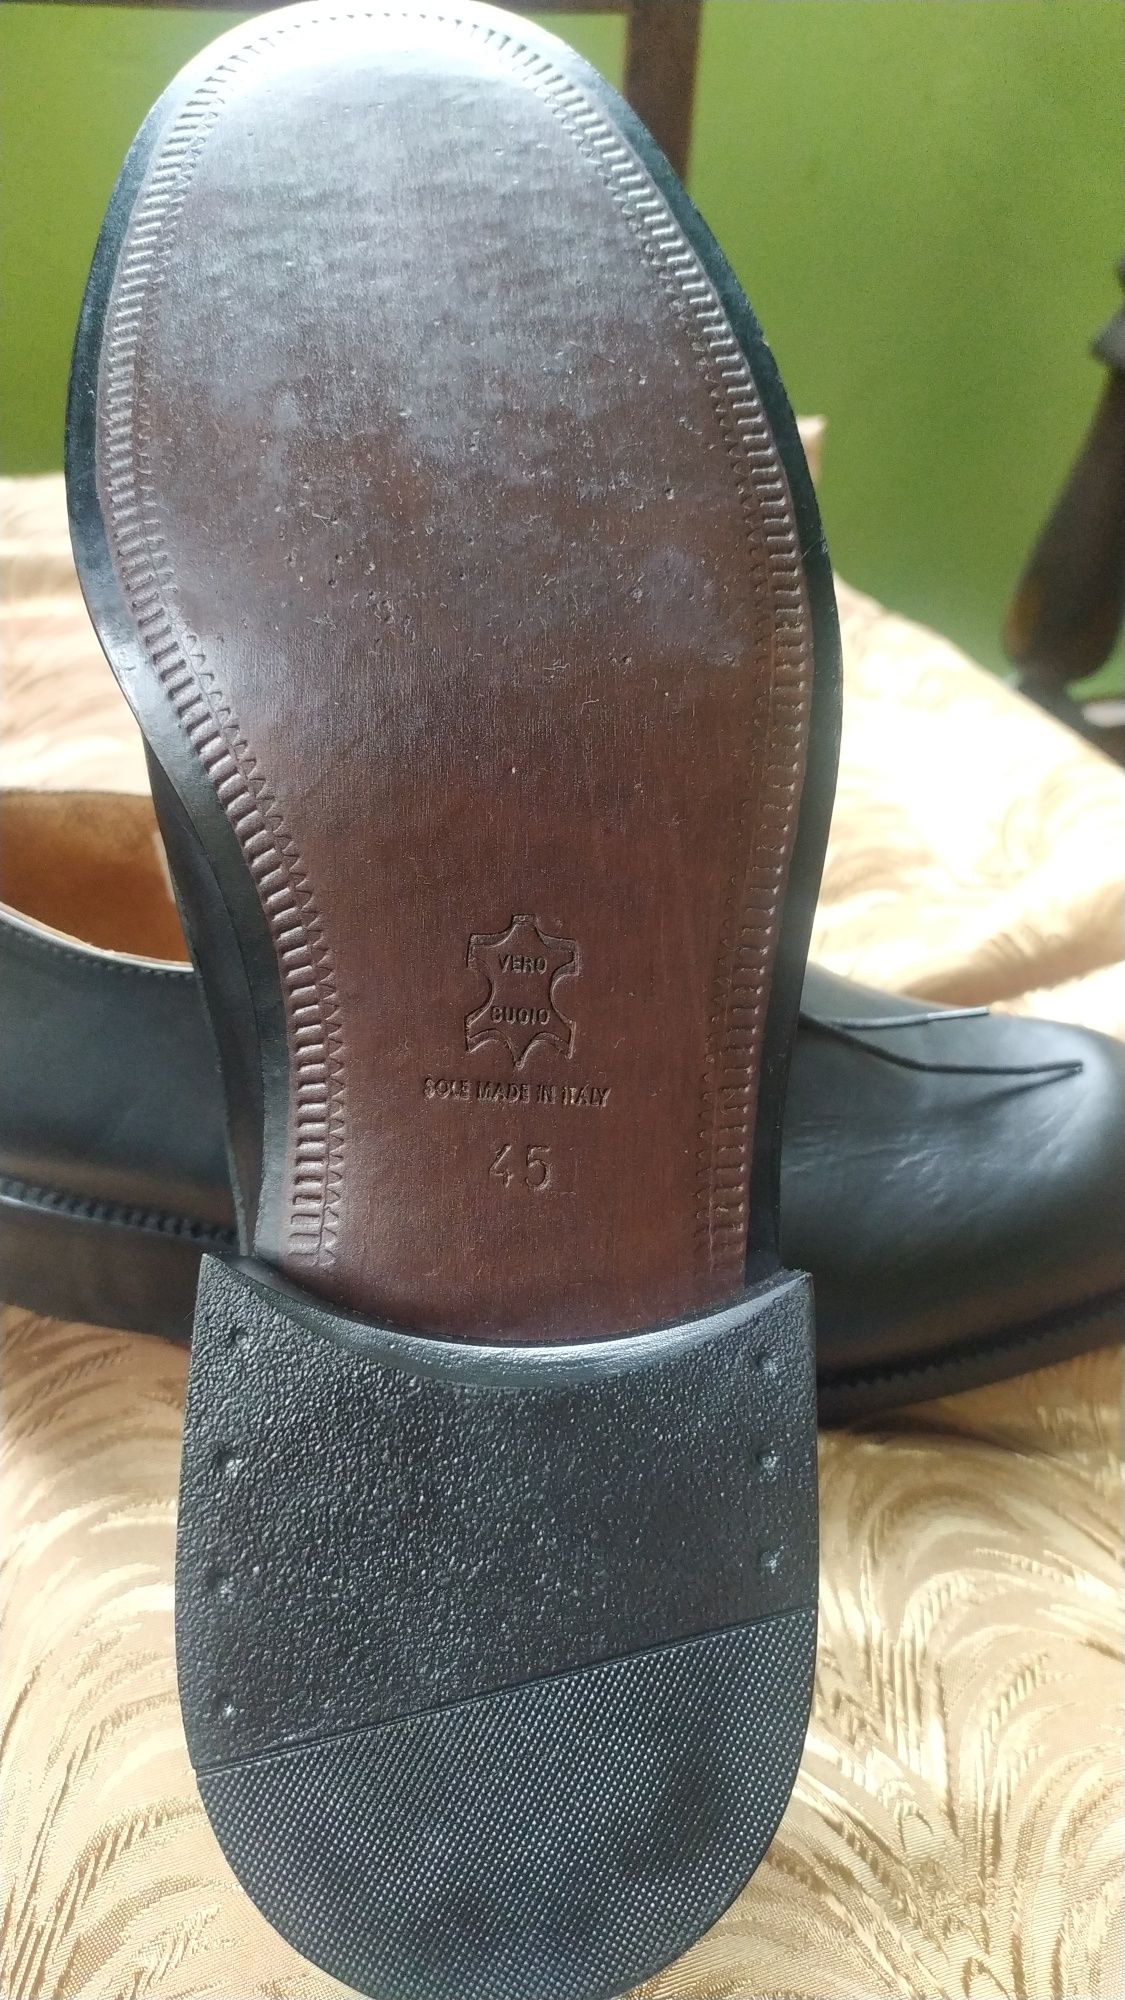 Мъжки обувки от естествена кожа